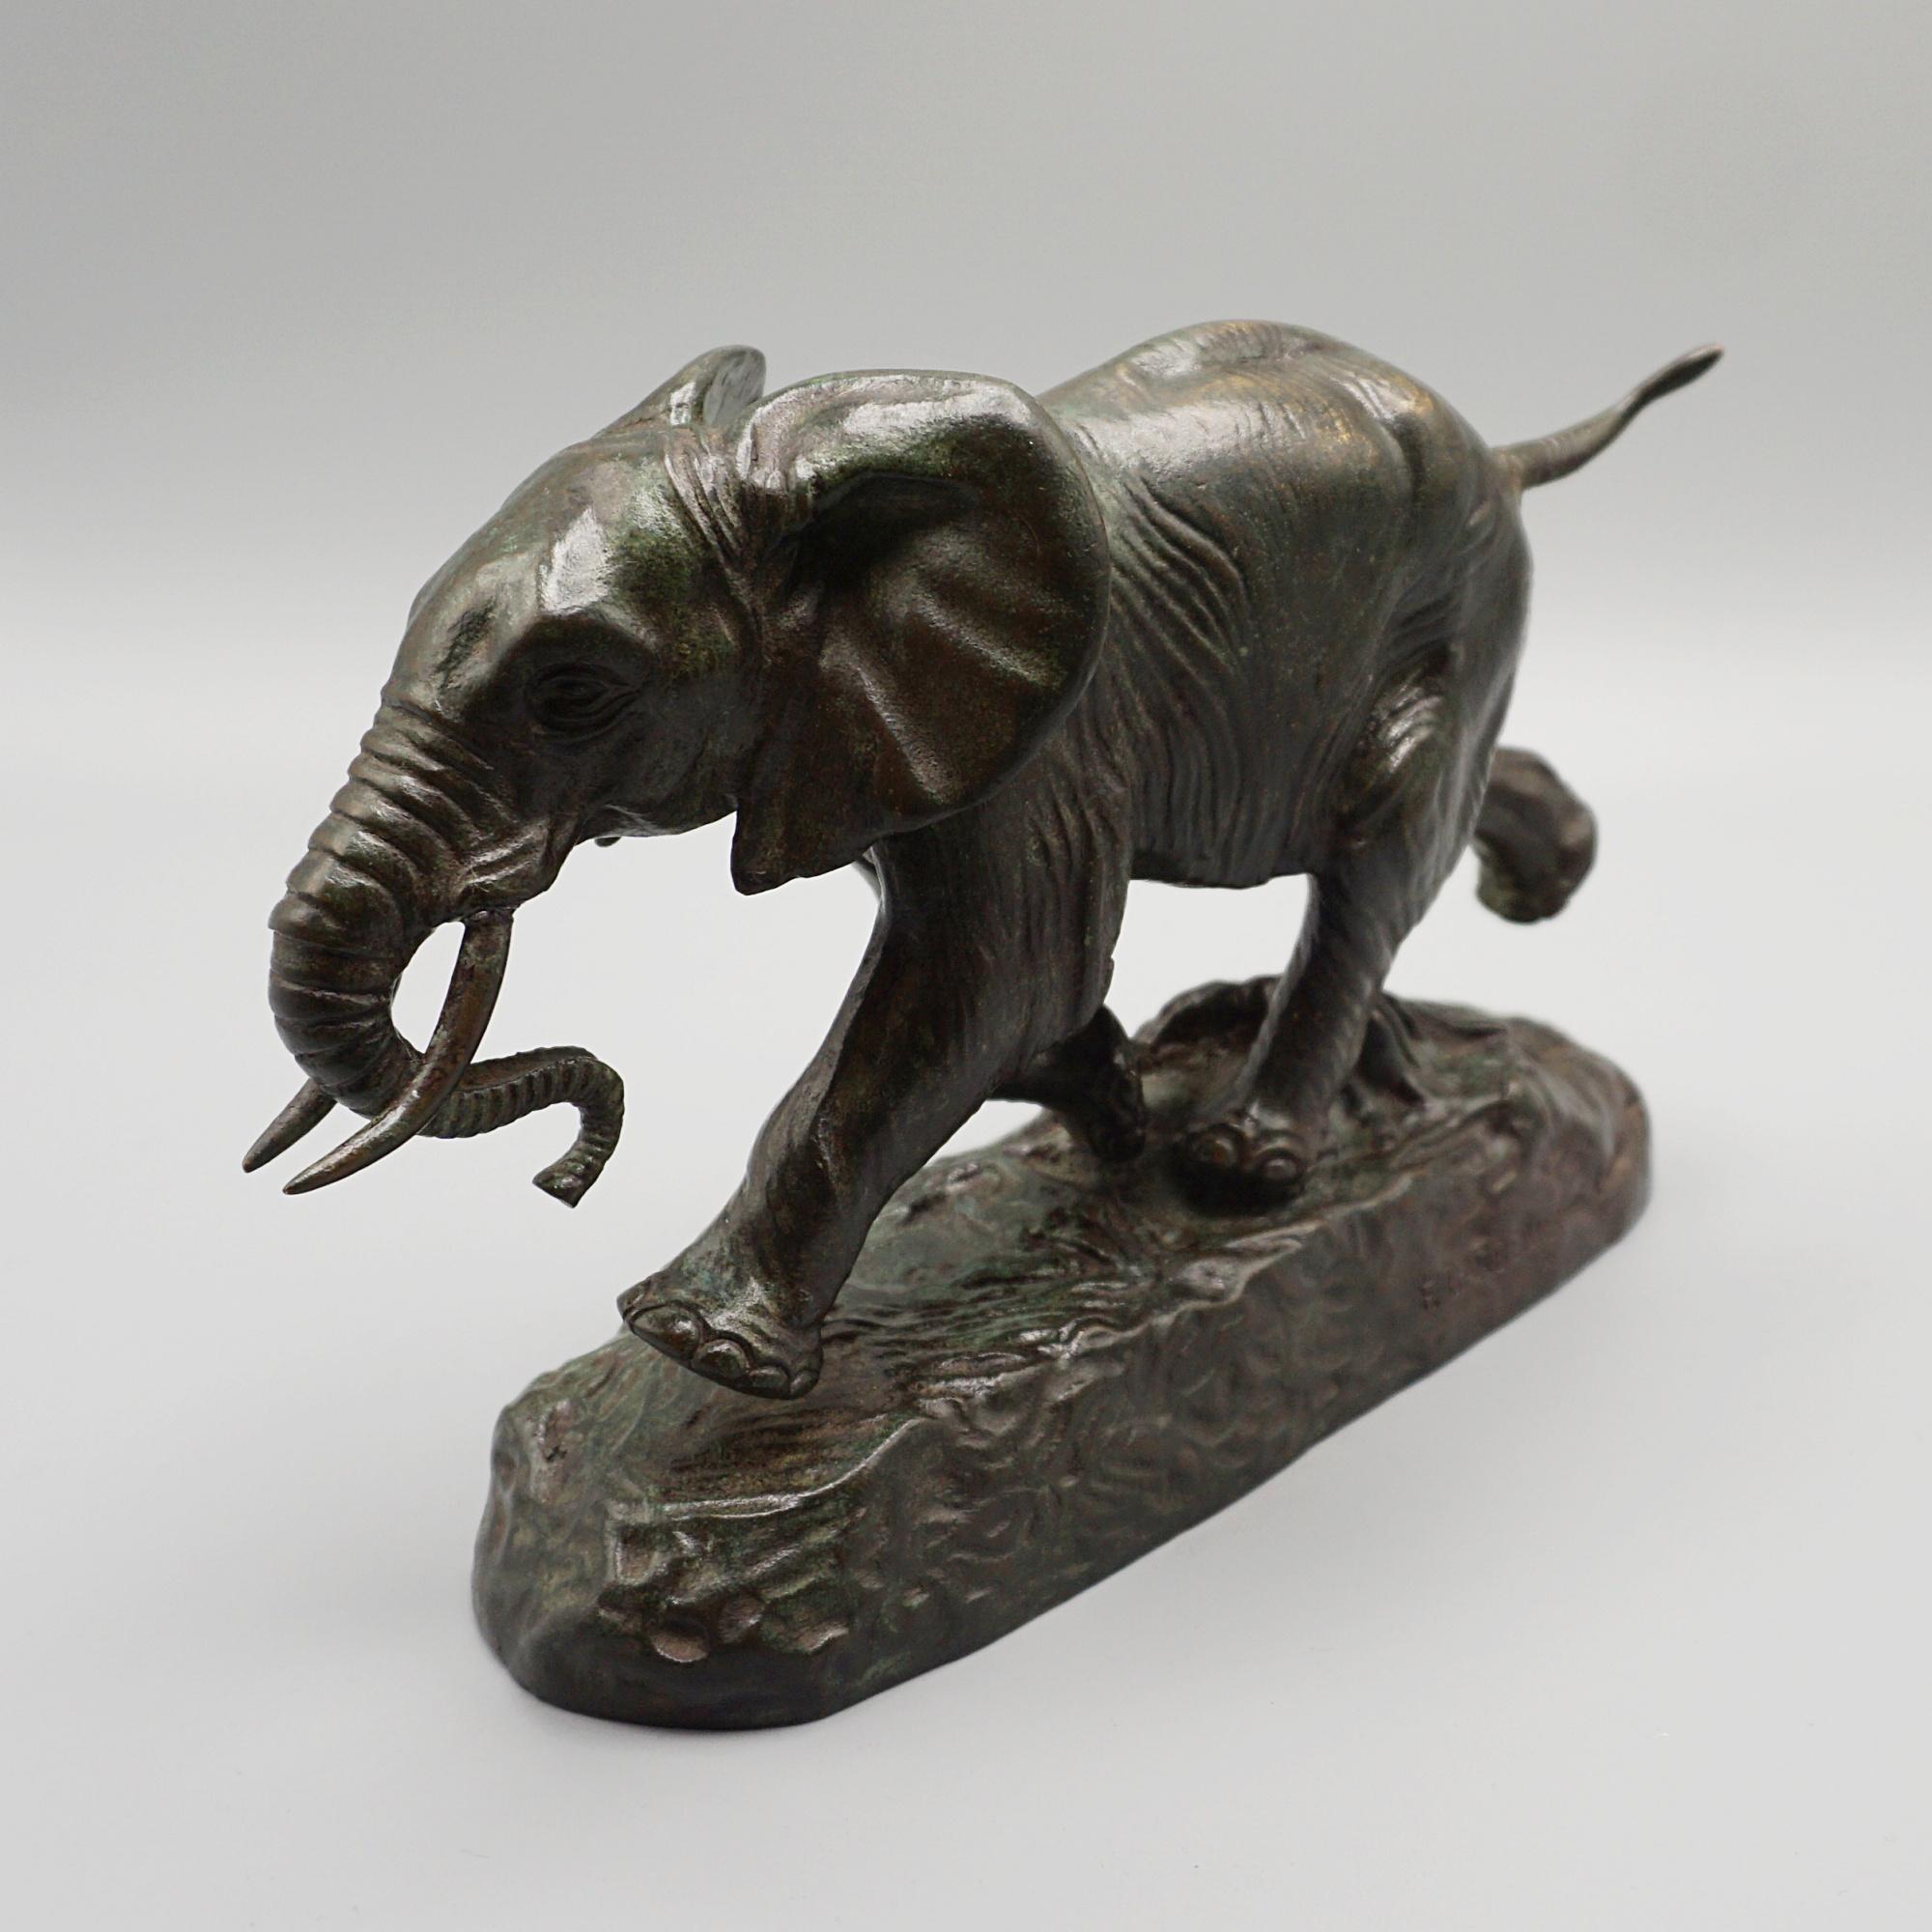 Éléphant du Sénégal Sculpture en bronze de la fin du XIXe siècle, réalisée par Antoine-Louis Barye (1795-1875), représentant un éléphant d'Afrique en train de charger. Excellente patine verte et détails ciselés à la main. Signé 